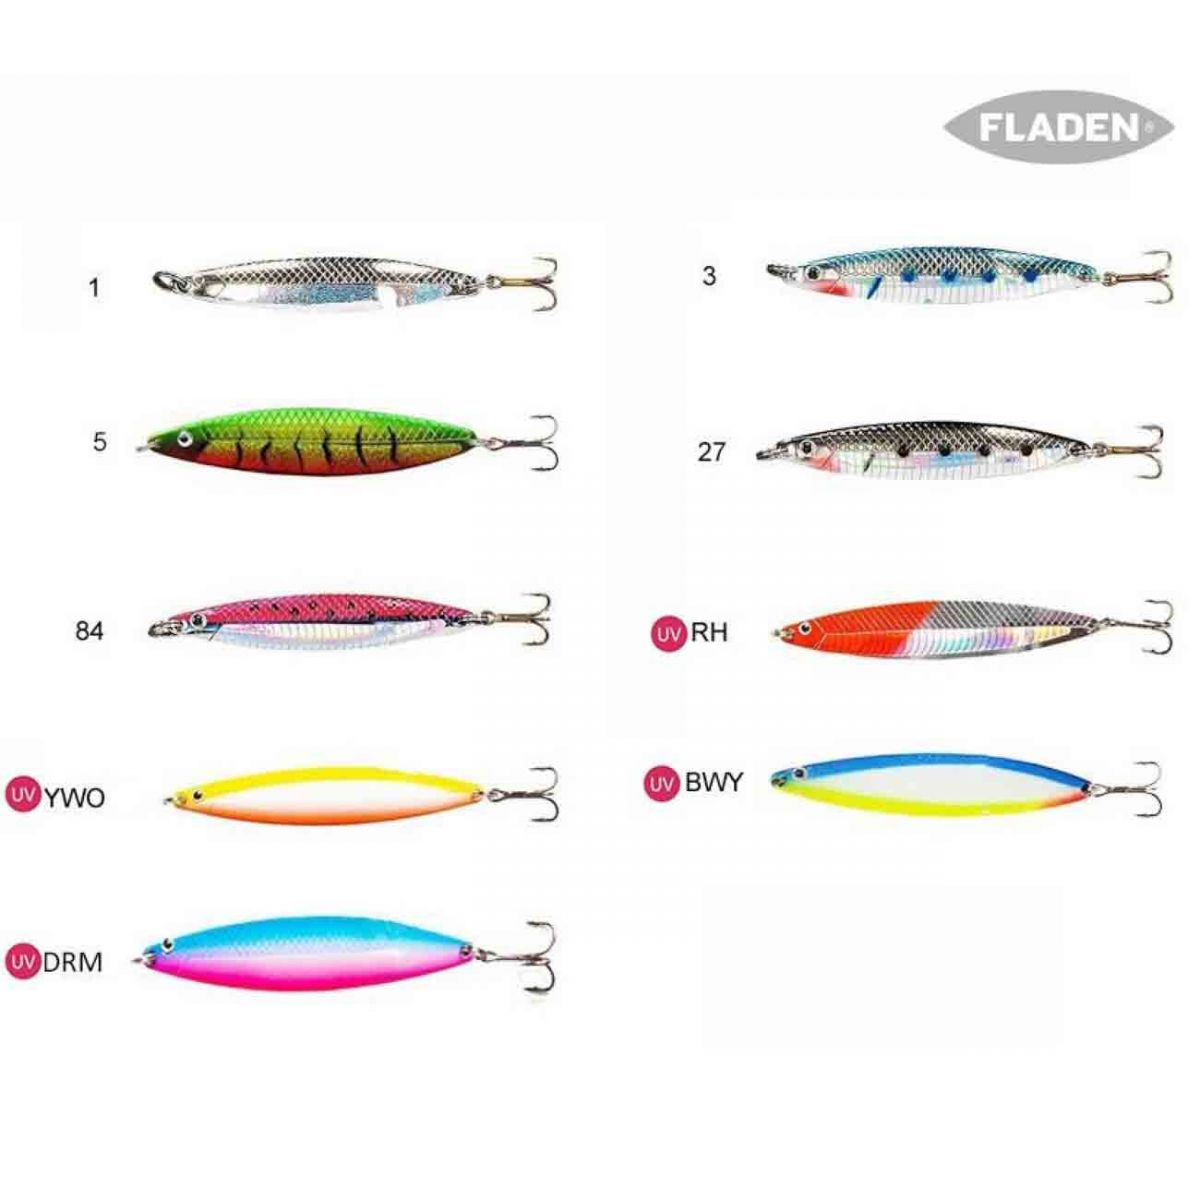 Fladen Nidingen Kaşık 8gr,fladen kalitesinde avcılık kalitesini ispatlamış  çeşitli renk skalasına sahip nidingen serisi olta kaşığı